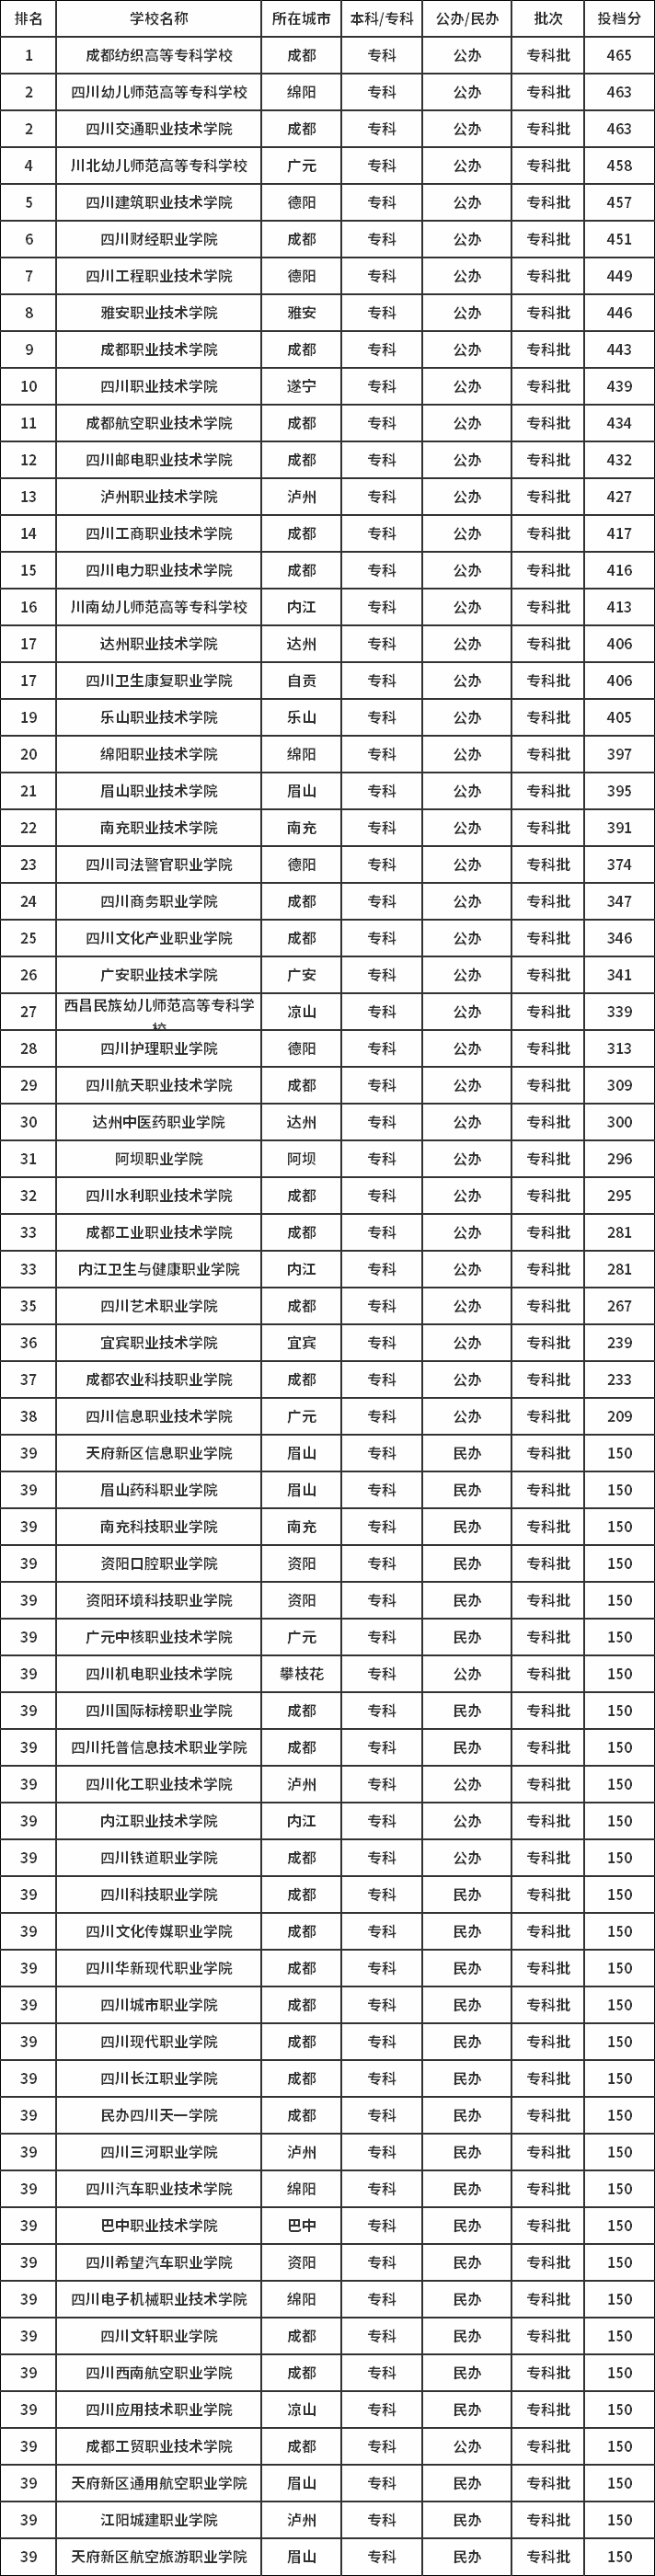 2019年四川专科文科学校排名及分数线.png